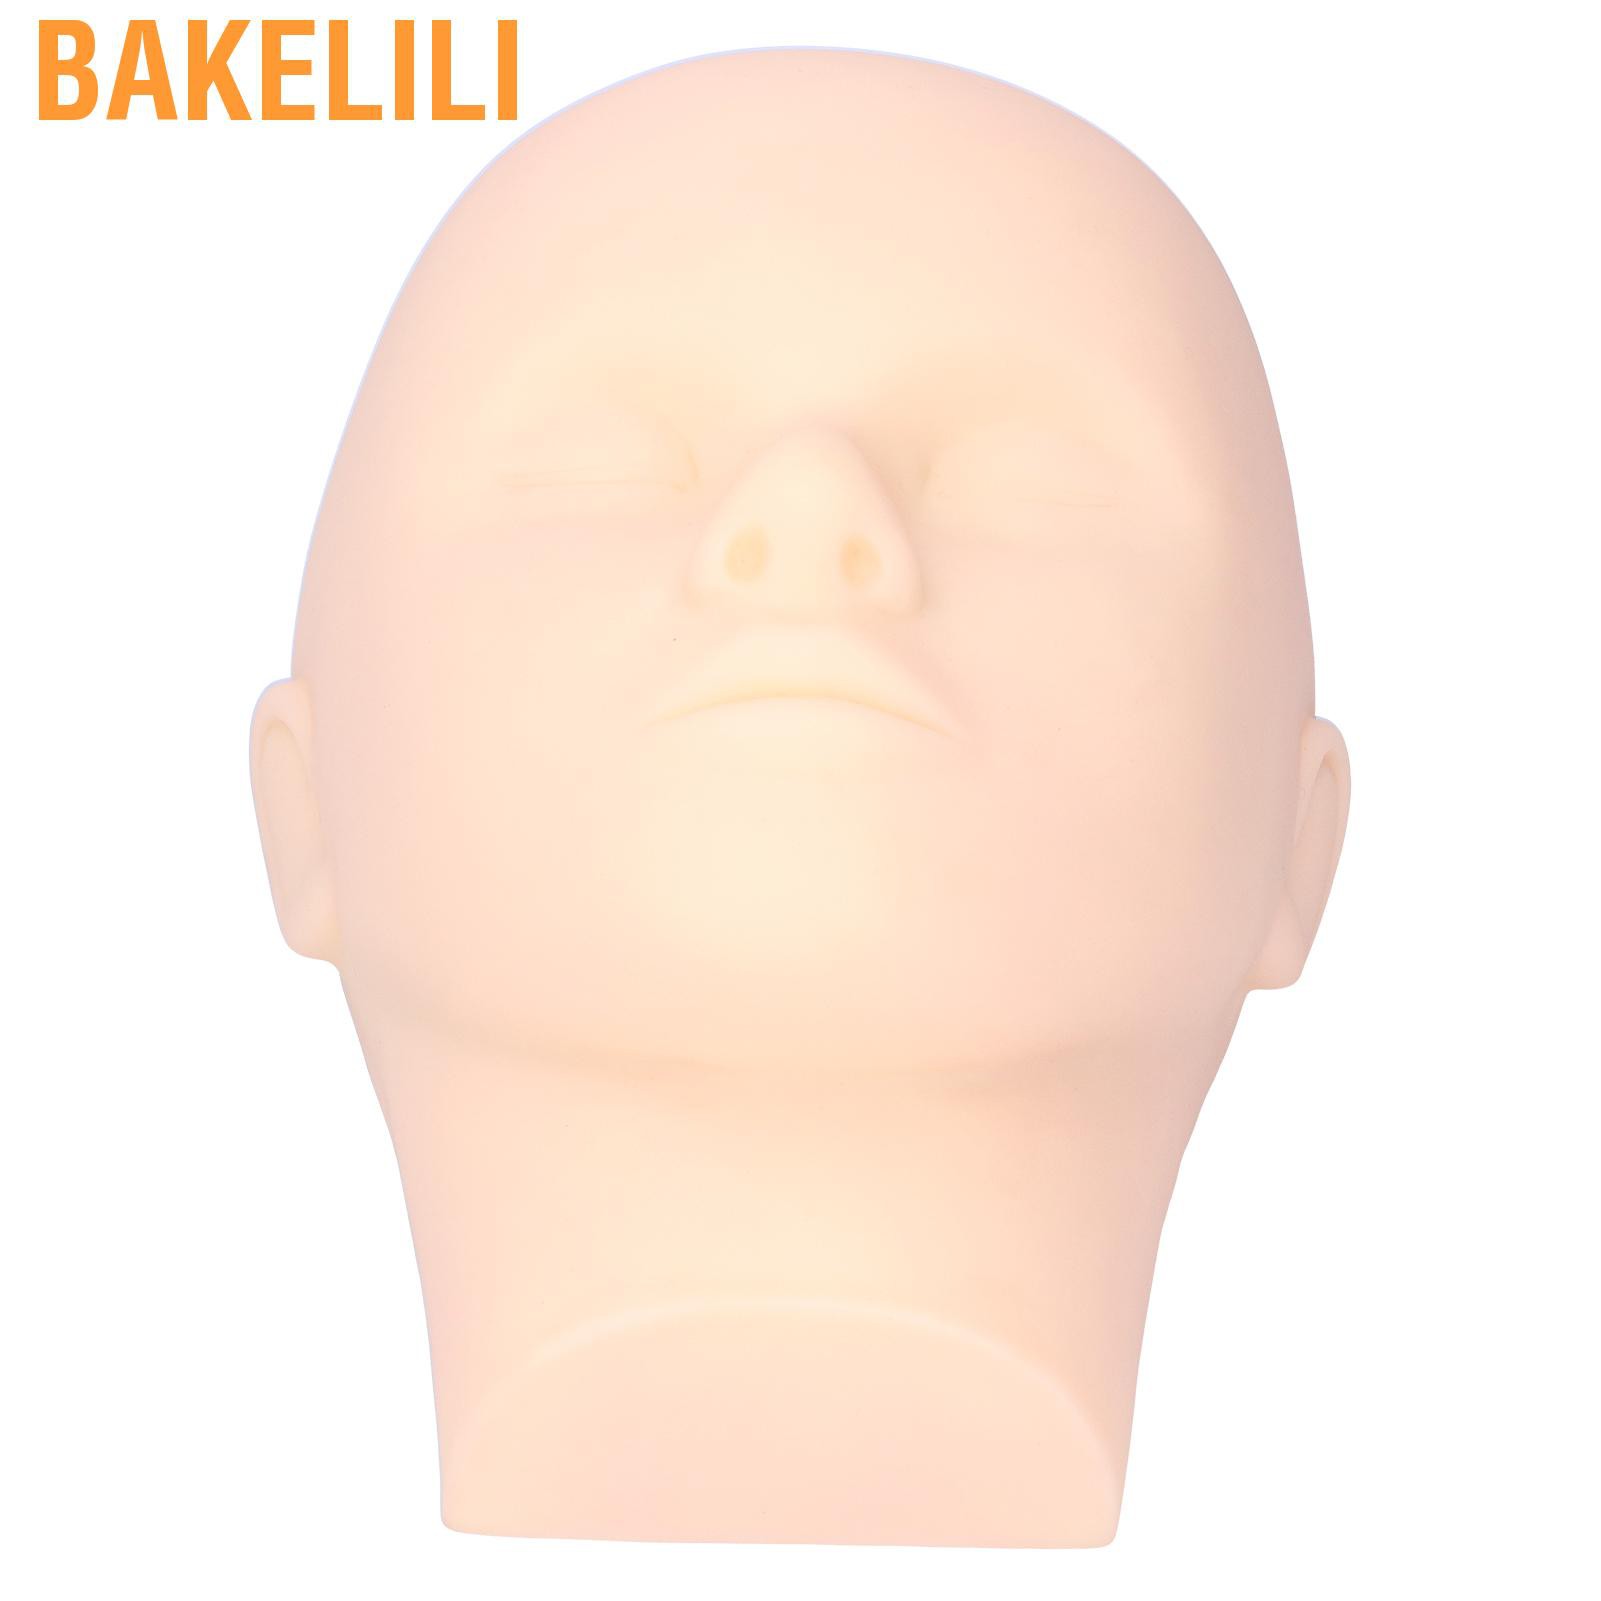 Bakelili หัวหุ่นจําลองสําหรับใช้ในการฝึกแต่งหน้า - Bakelili.Th - Thaipick